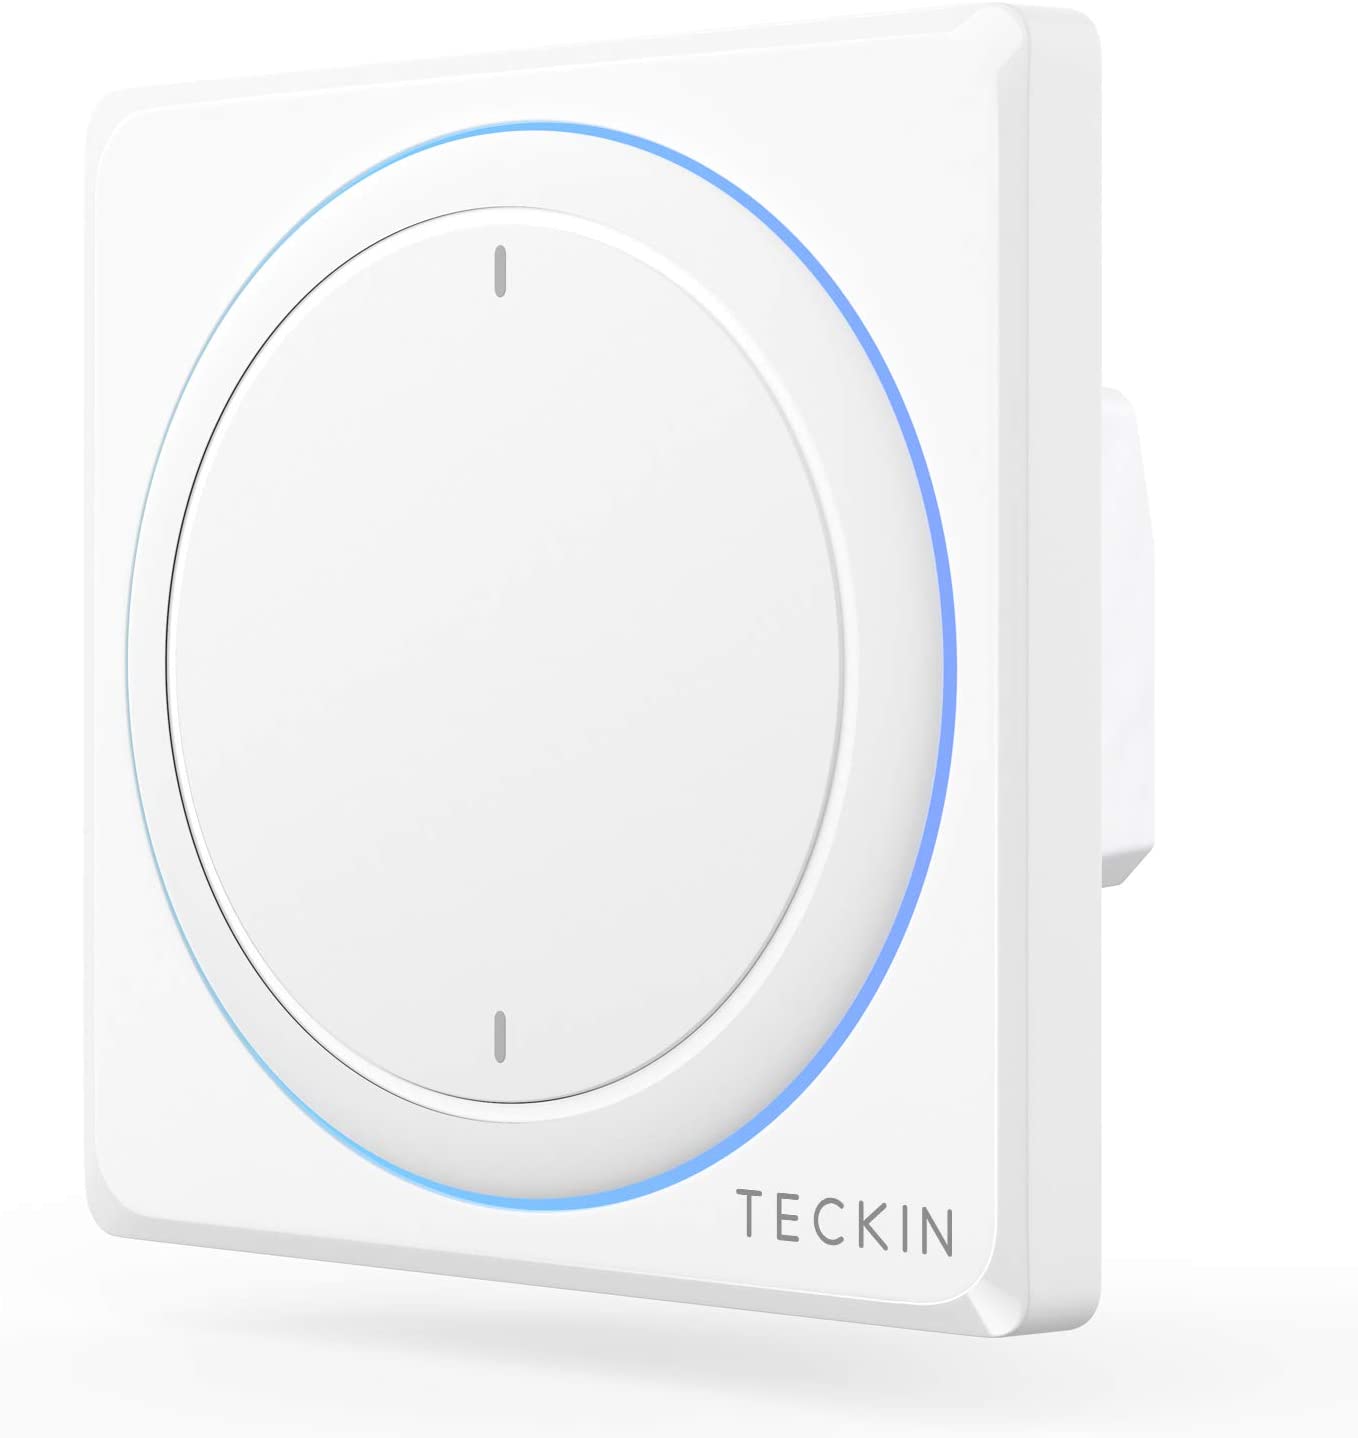 TECKIN Interruptores Inteligentes de pared,compatibles con Alexa,Google Home, Interruptores WiFi Inteligentes con control remoto y de voz,Ajuste del Temporizador, No Se Sequiere Hub.